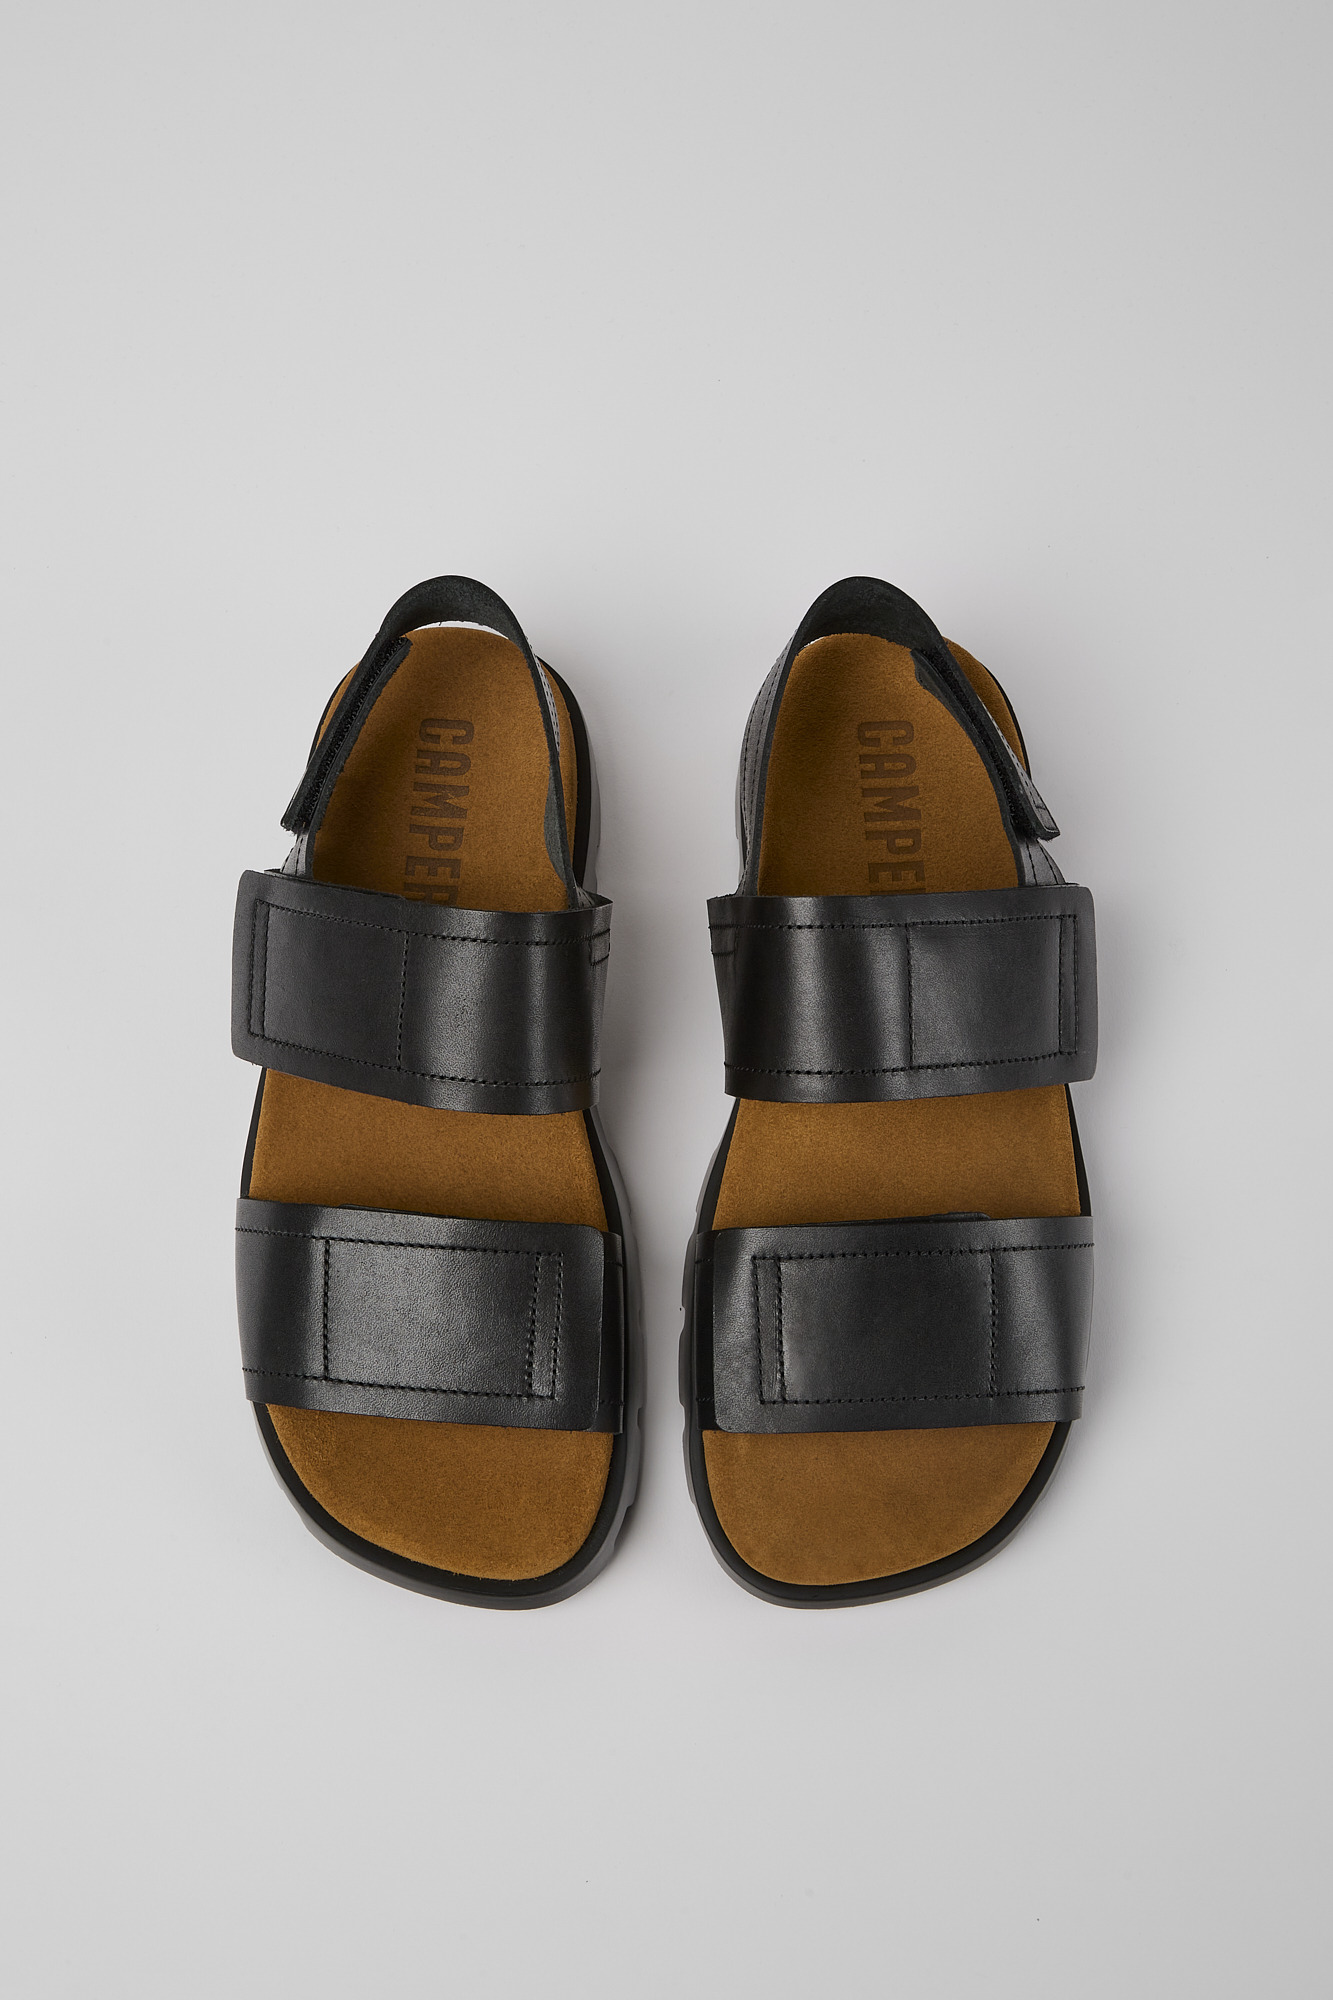 BRUTUS Black Sandals for Men - Spring/Summer collection - Camper 